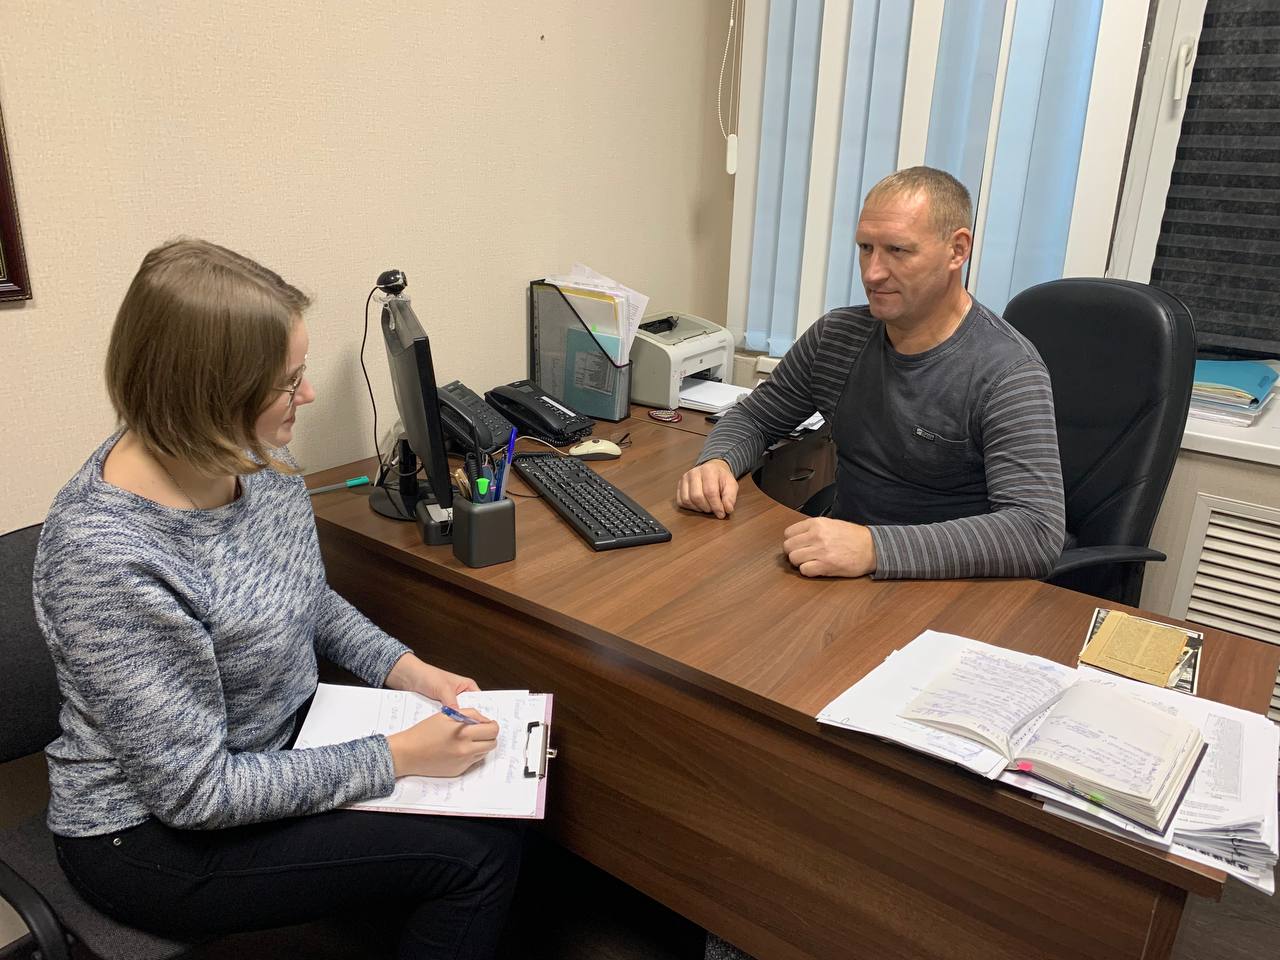 Сотрудники ОМВД России по Белгородскому району встретились с ветераном службы участковых уполномоченных.